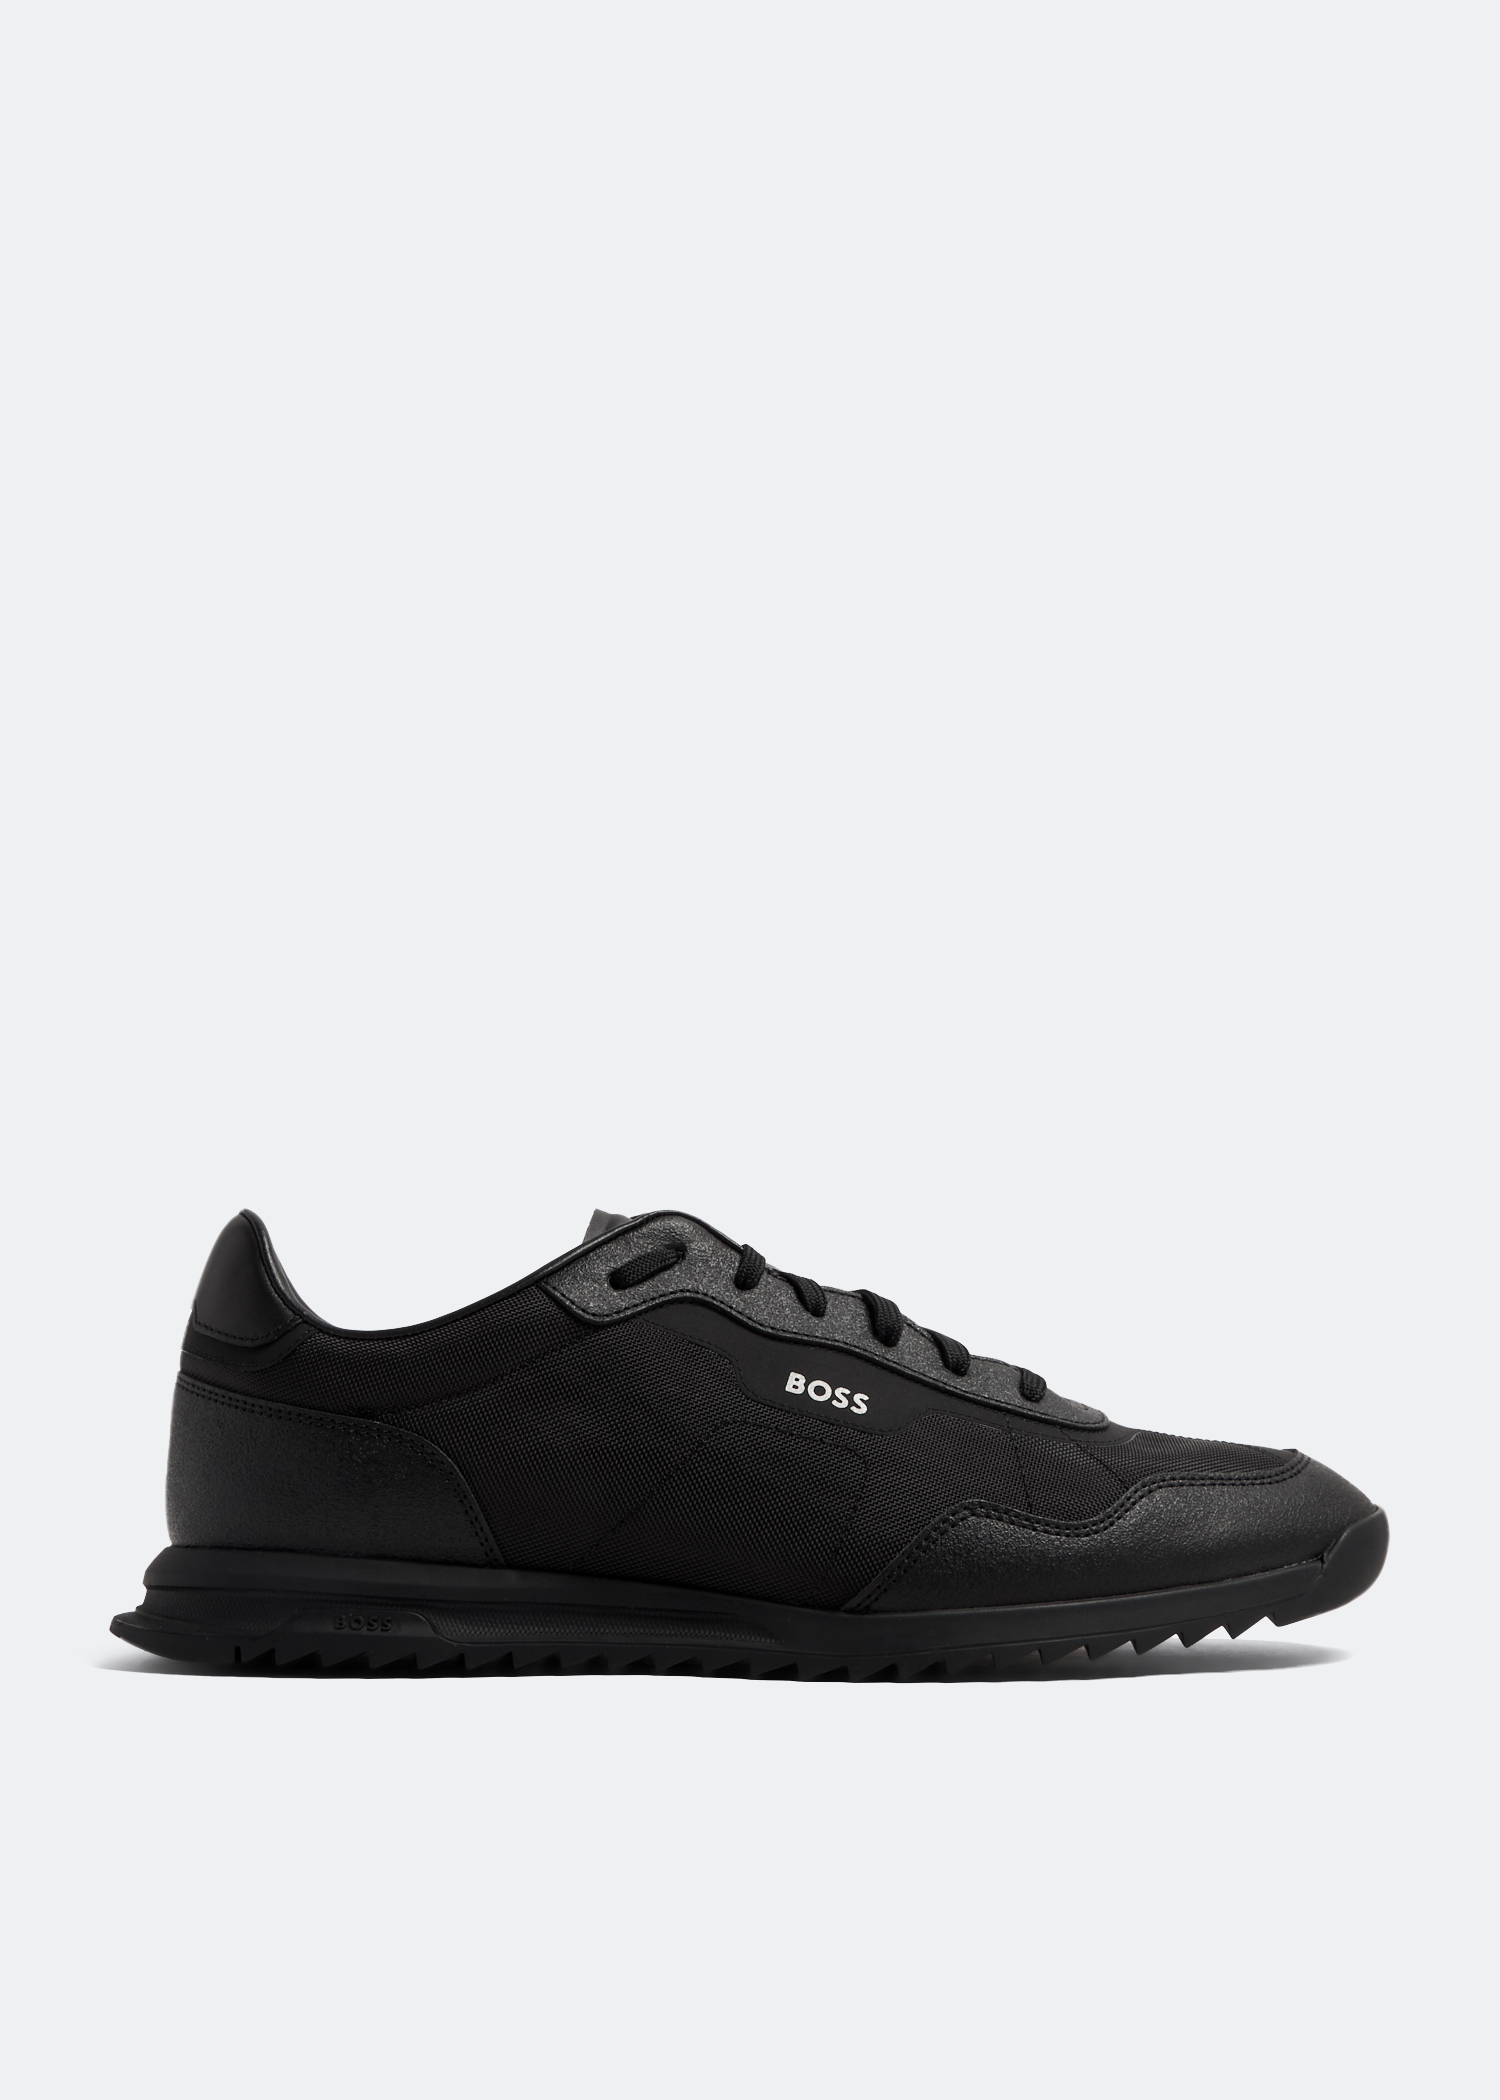 BOSS Zayn sneakers for Men - Black in KSA | Level Shoes